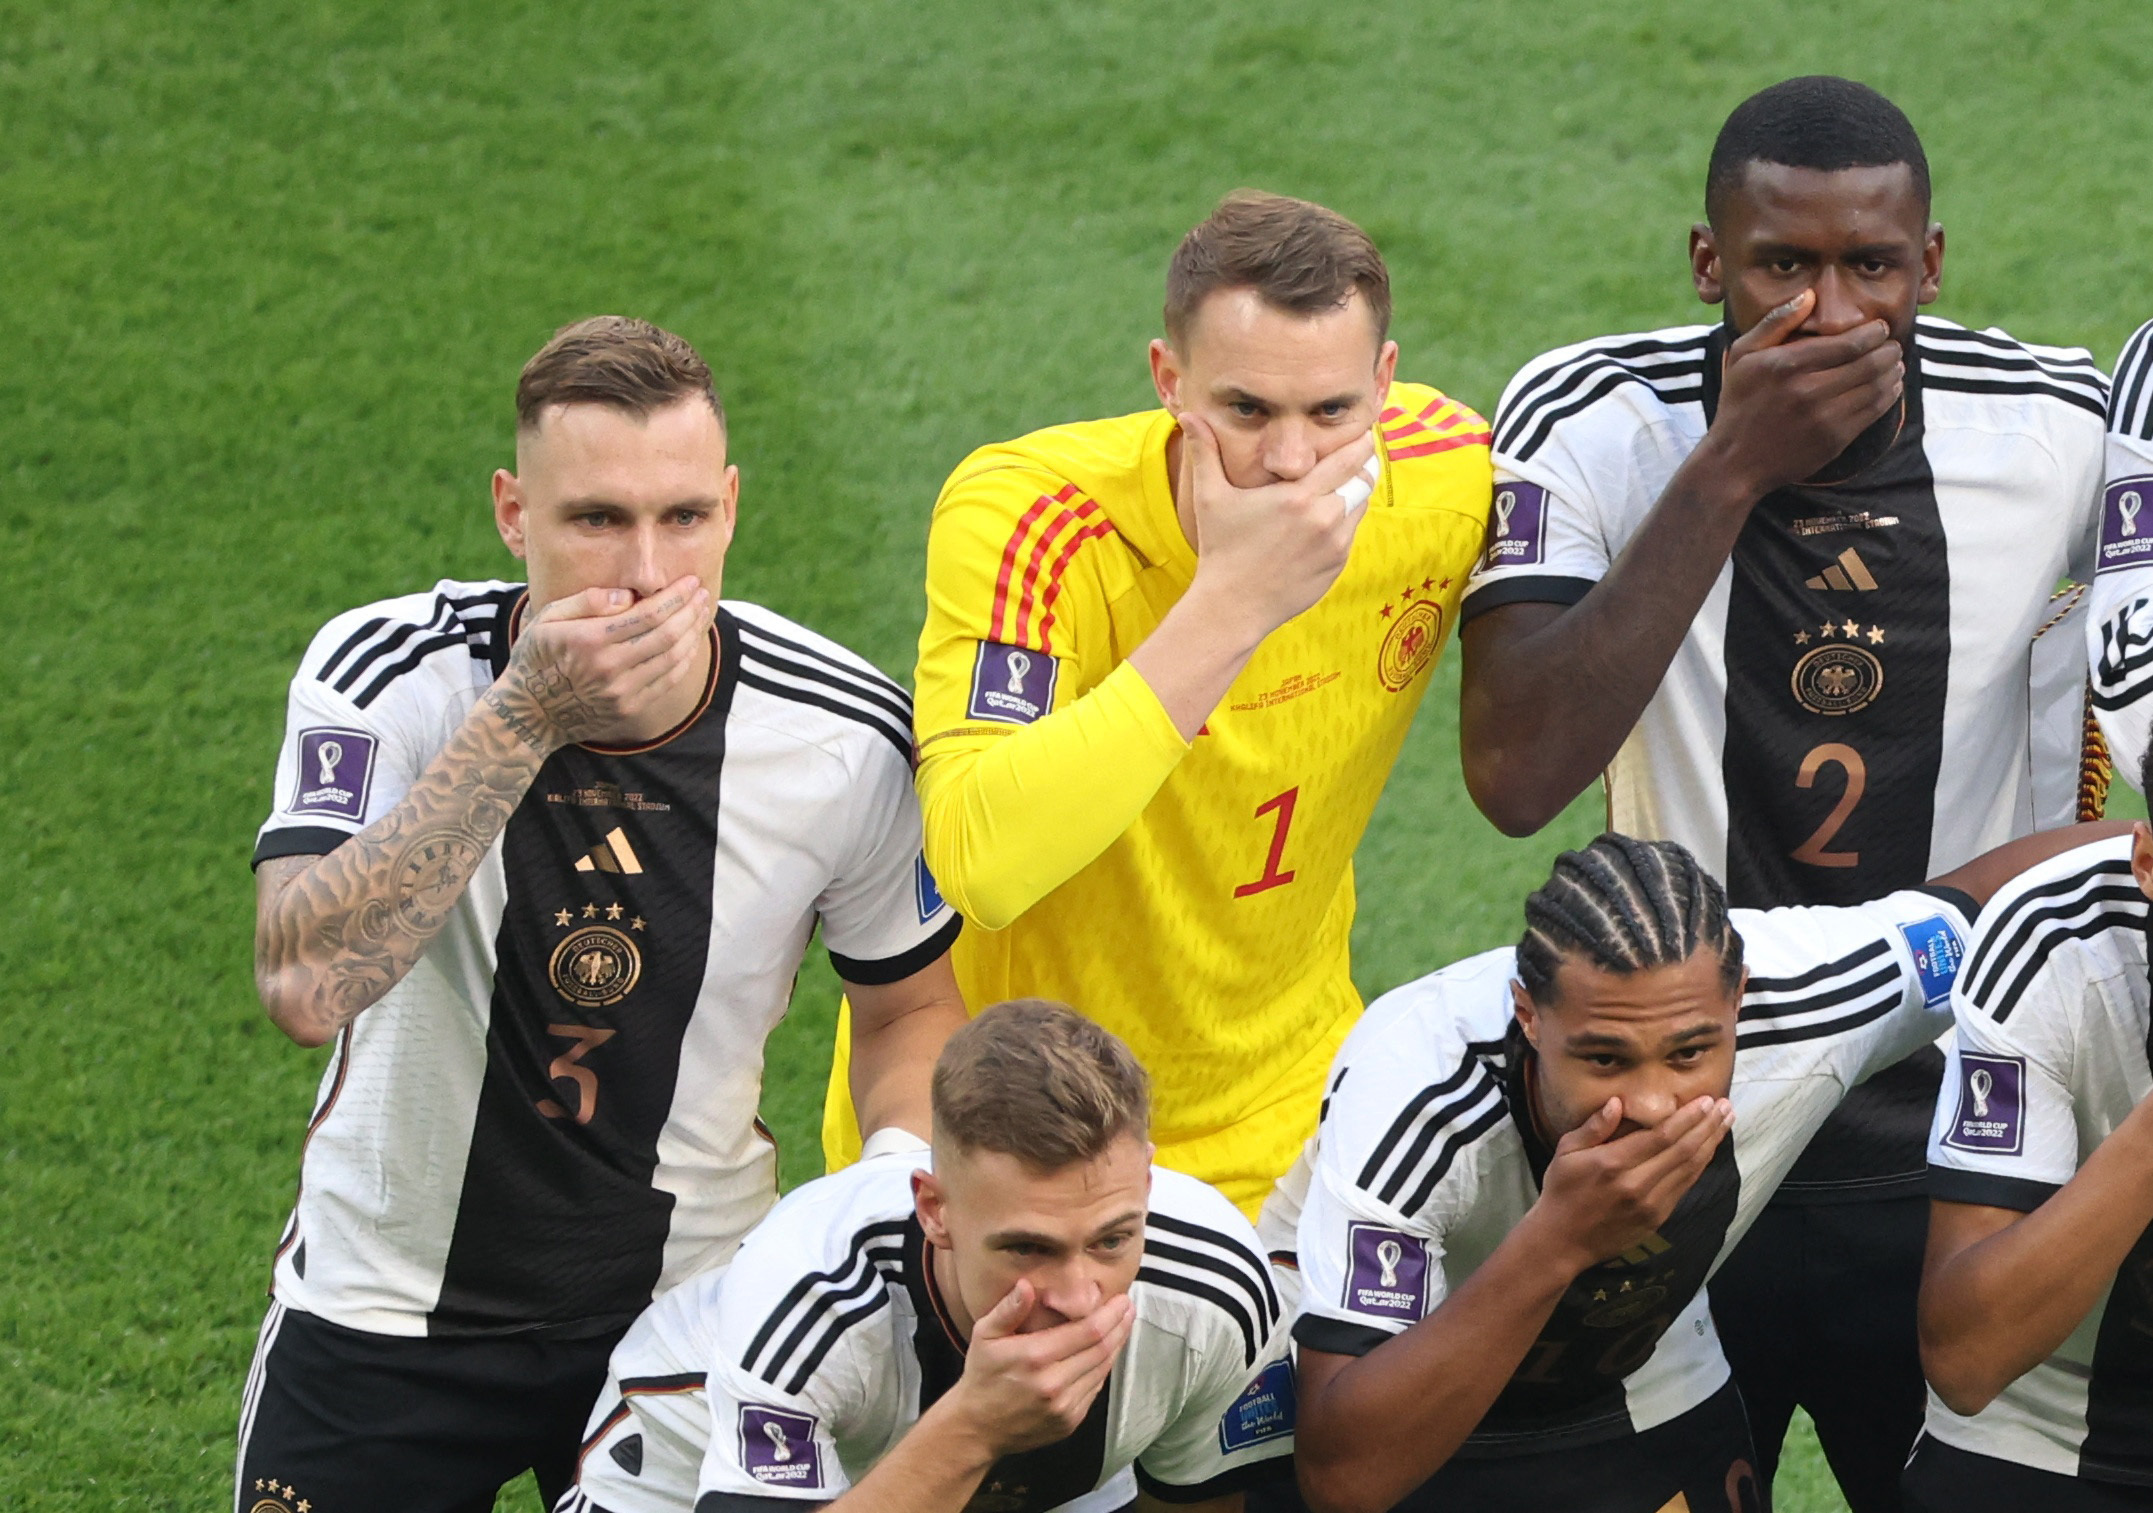 Neuer y sus compañeros de Alemania se taparon la boca para protestar contra la FIFA en el Mundial (REUTERS/Molly Darlington)